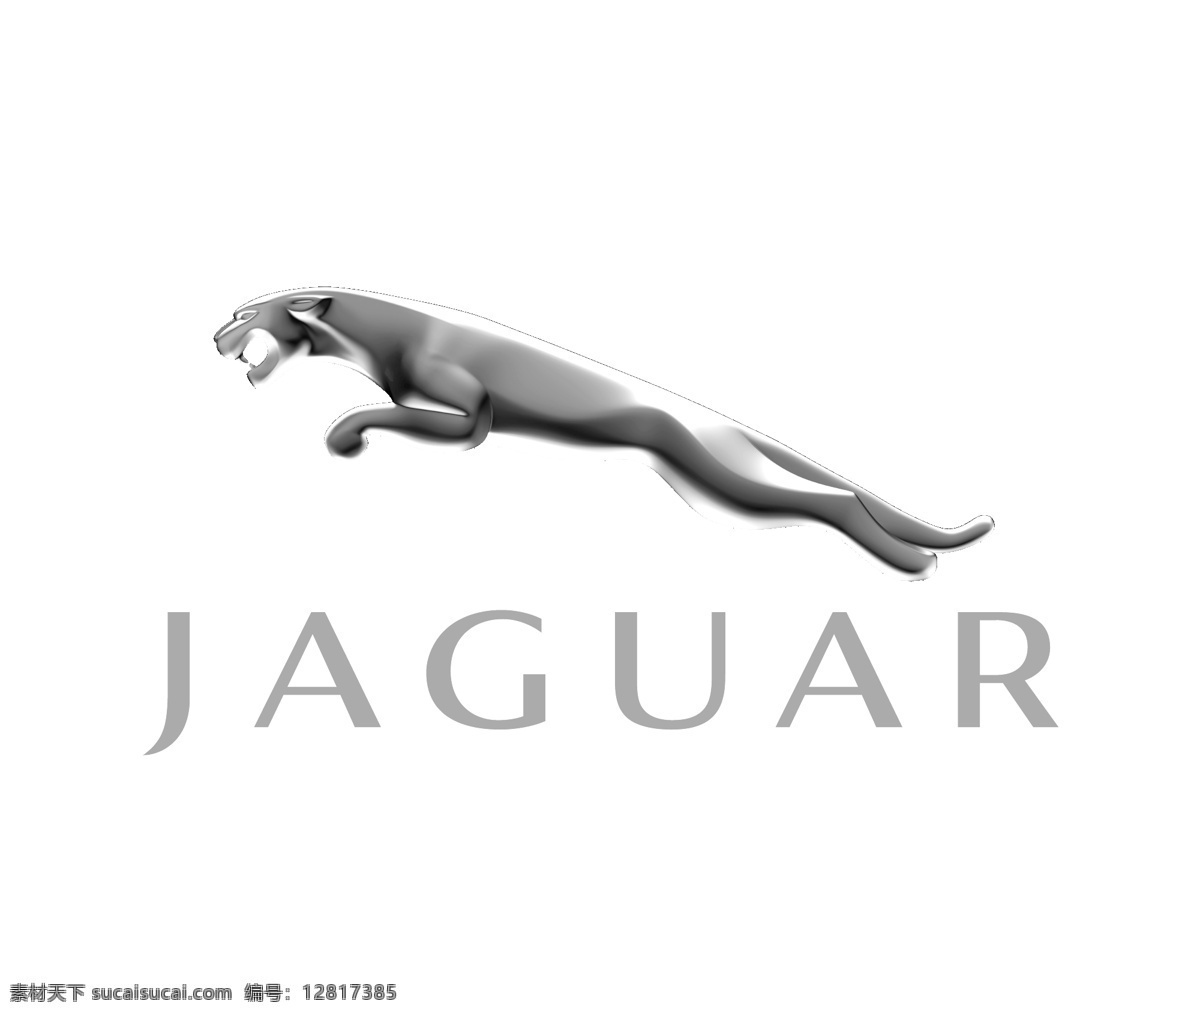 jaguar logo大全 logo 设计欣赏 商业矢量 矢量下载 汽车 大全 标志设计 欣赏 网页矢量 矢量图 其他矢量图